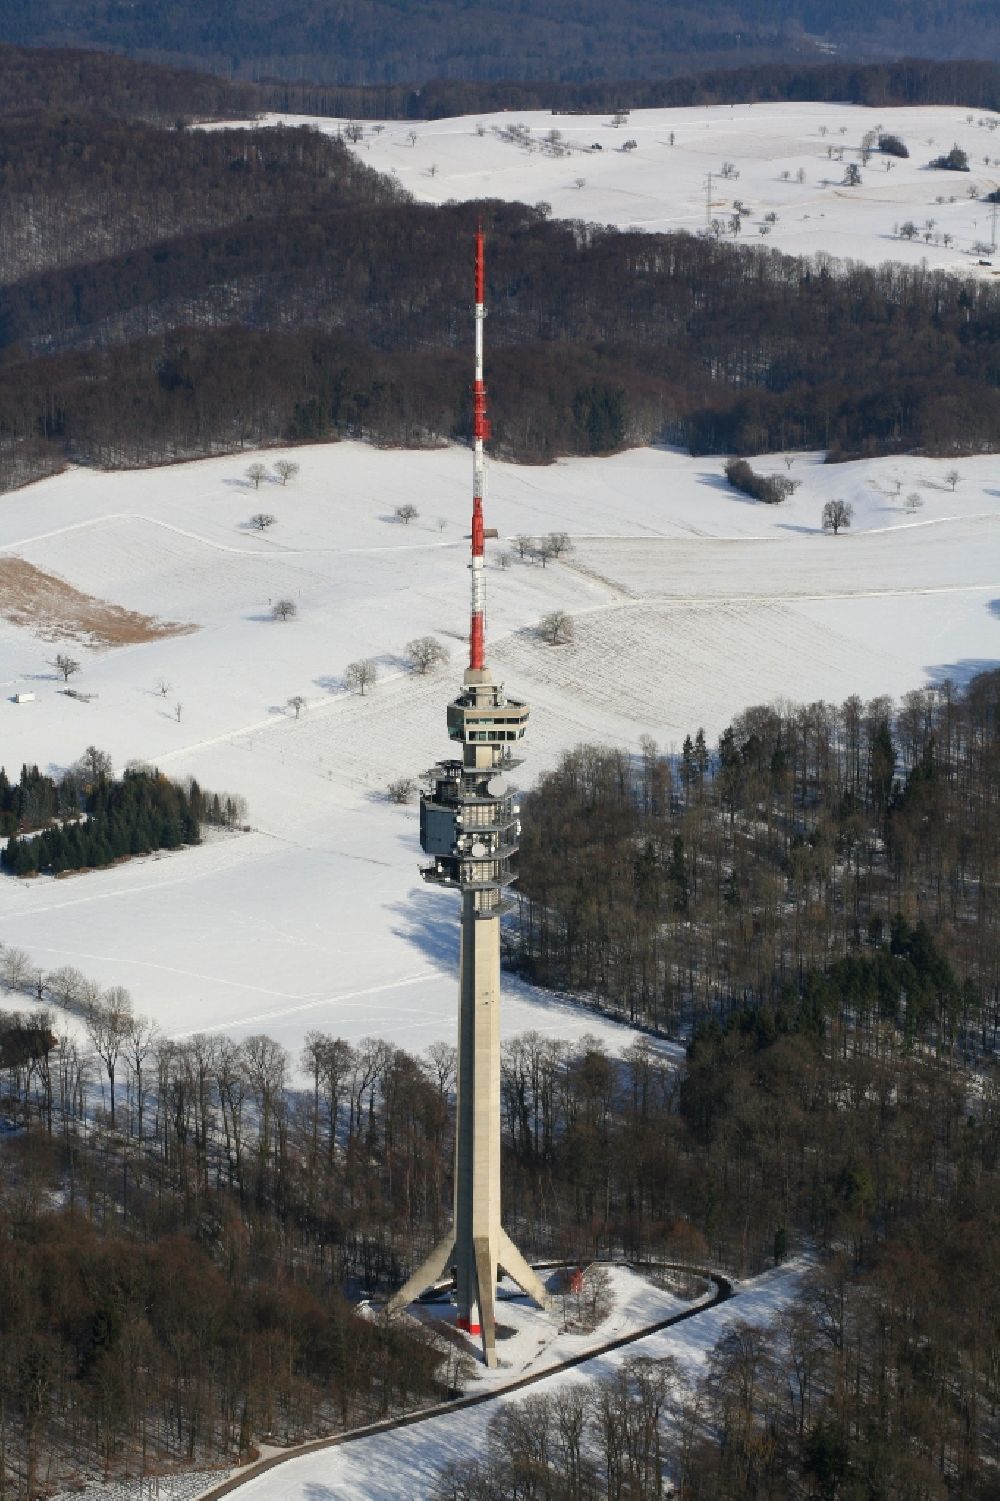 Bettingen von oben - Fernmeldeturm und Fernsehturm St. Chrischona Turm in Bettingen in Basel, Schweiz